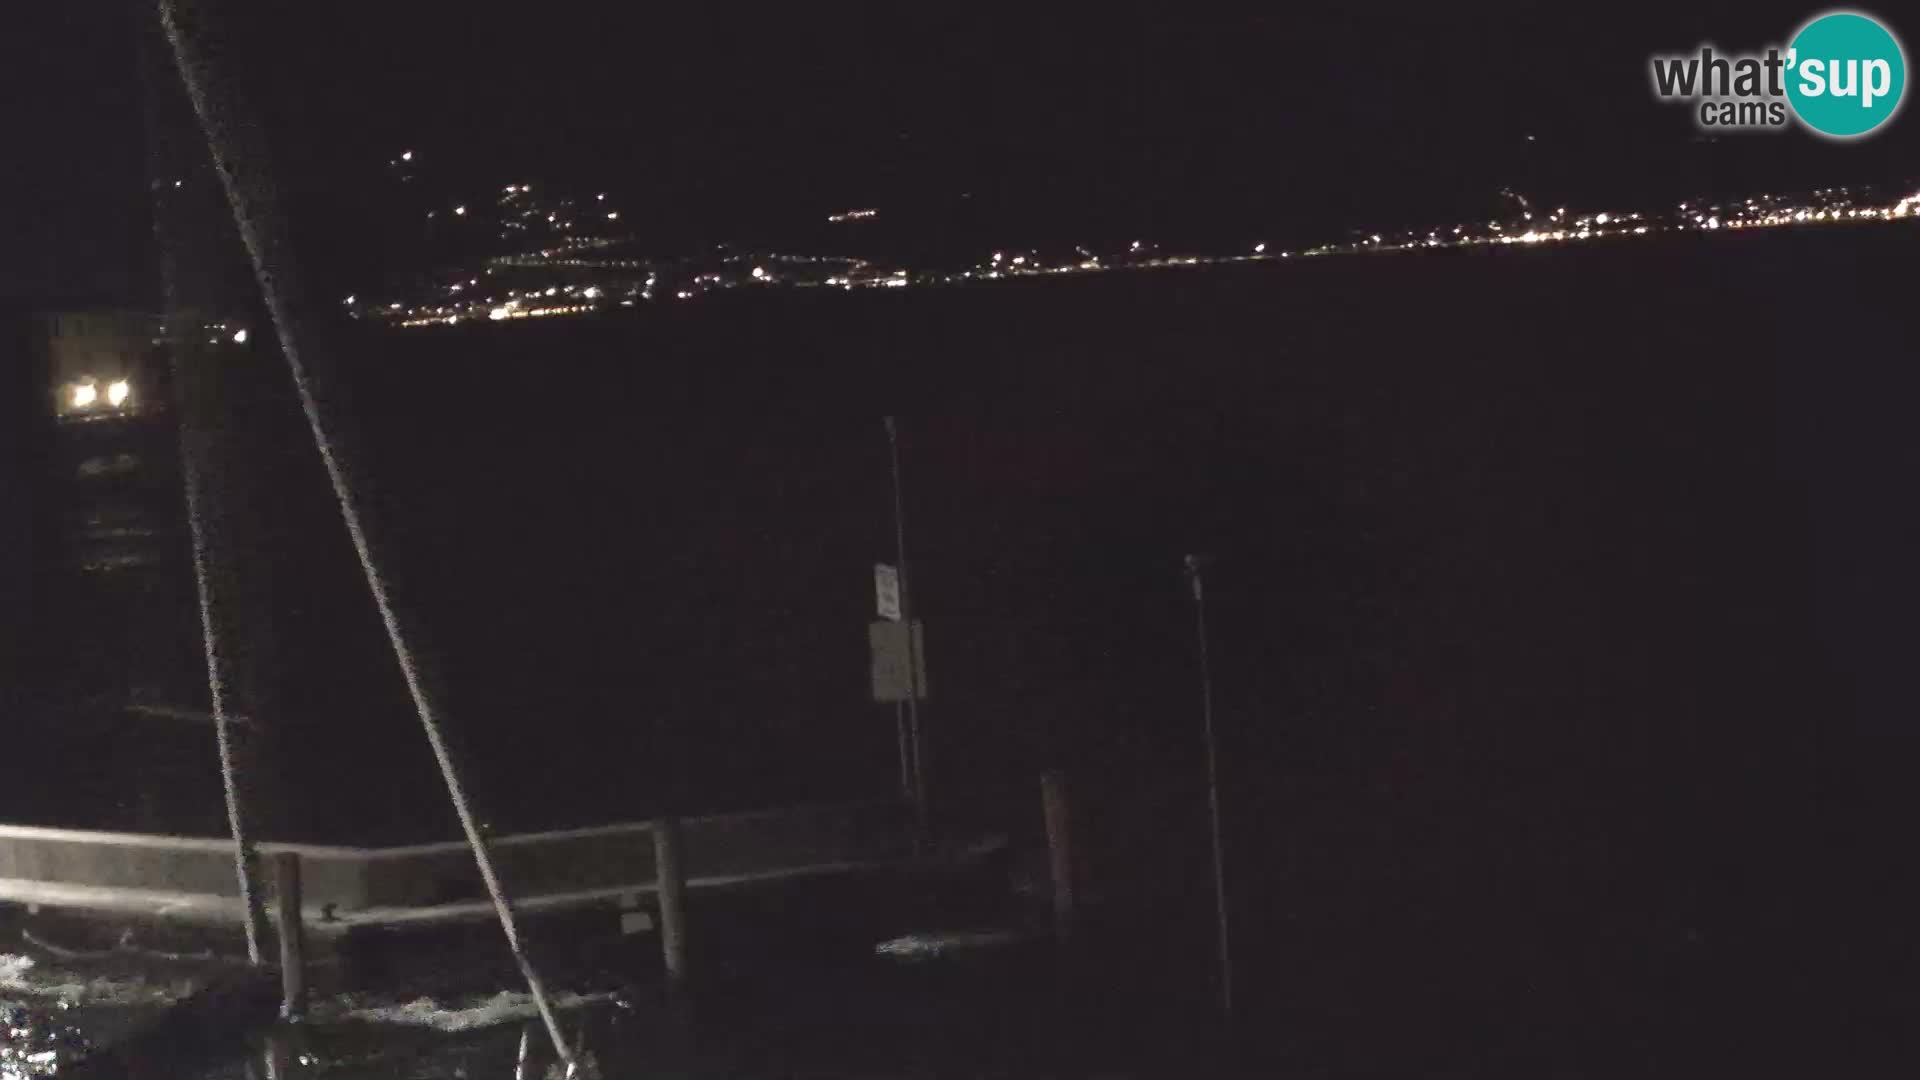 PRA’ DE LA FAM – Porto di Tignale – Windsurfer Gardsko jezero